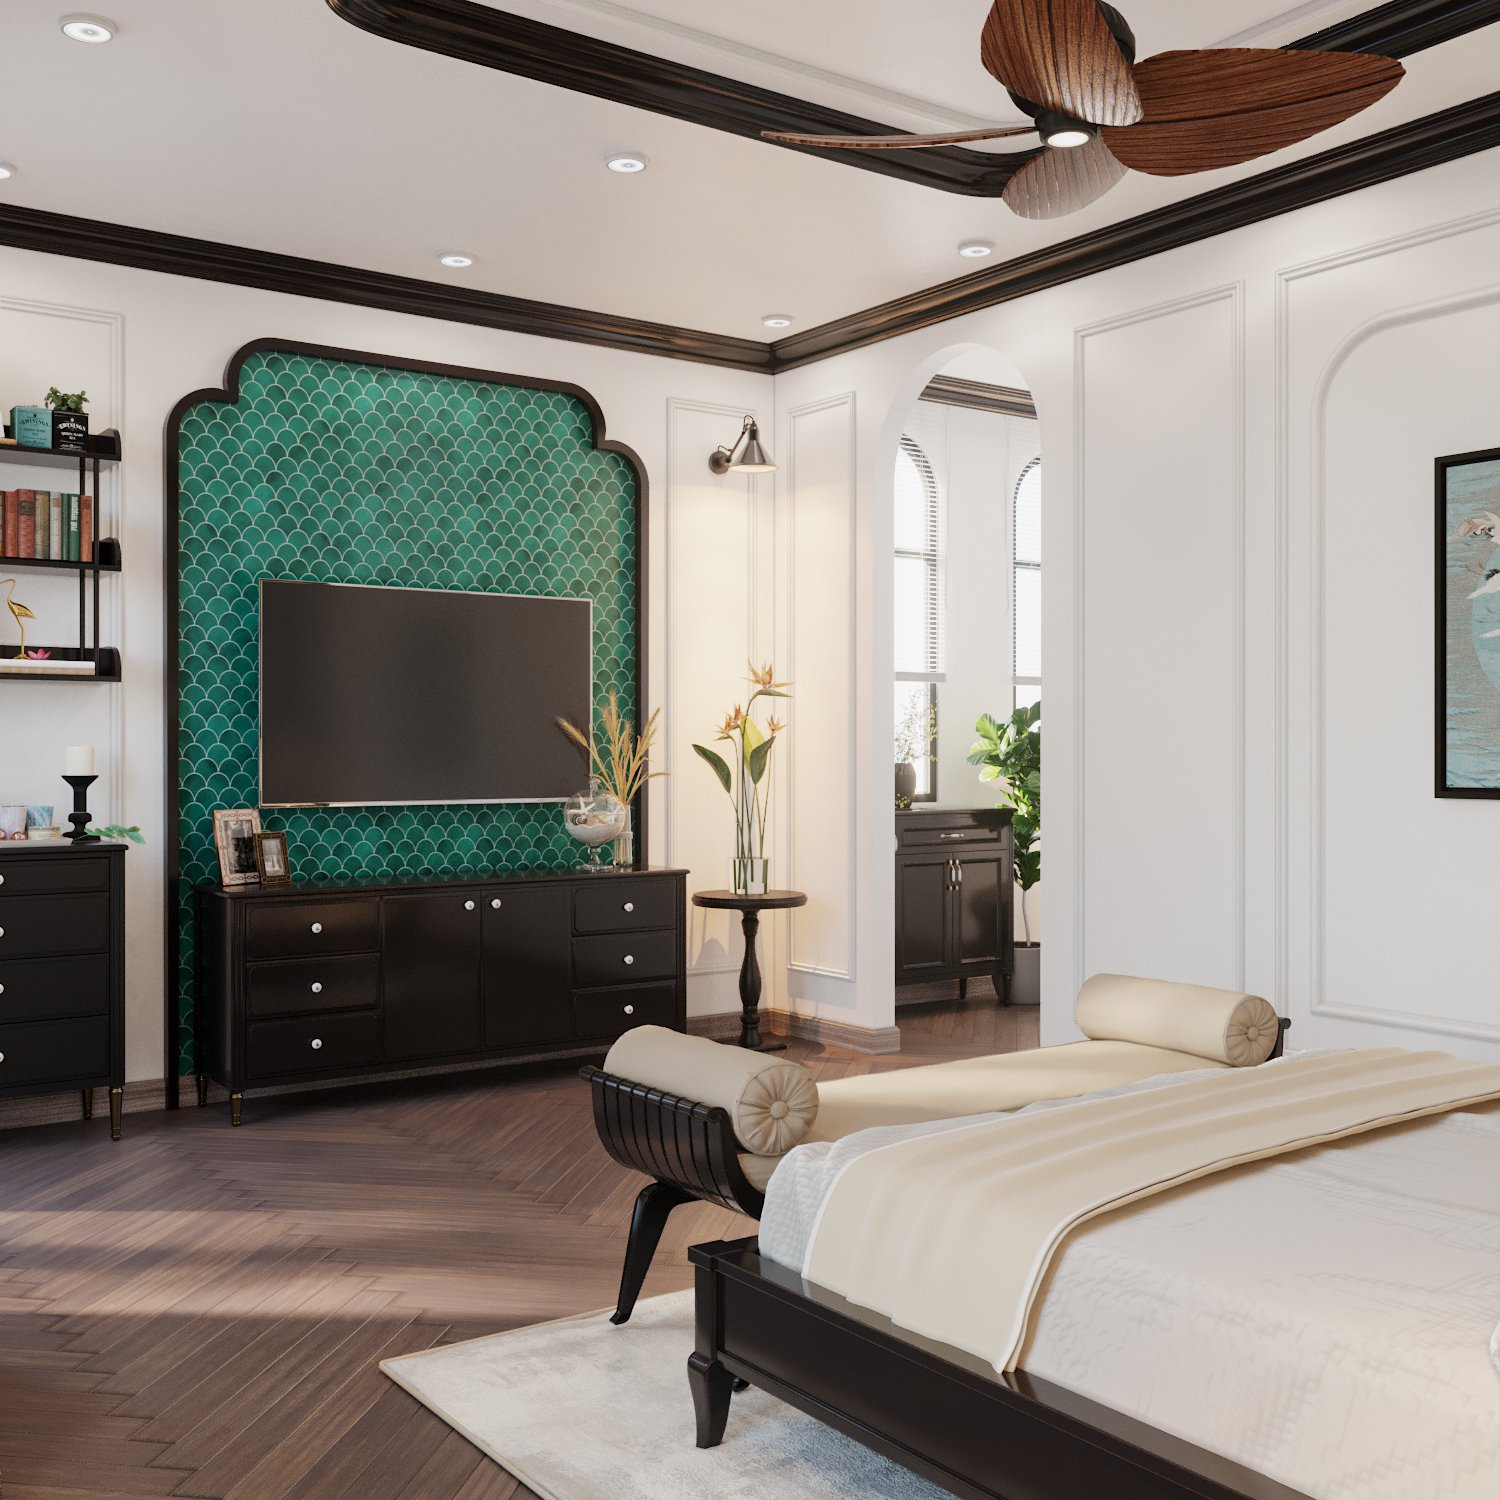 Phòng ngủ master rộng rãi, sử dụng nội thất đồng bộ với không gian sinh hoạt chung bên ngoài. Thay vì nền gạch, gỗ xương cá màu trung tính giúp giữ ấm đôi chân, tạo cảm giác thư giãn, thân thiện cho người dùng.